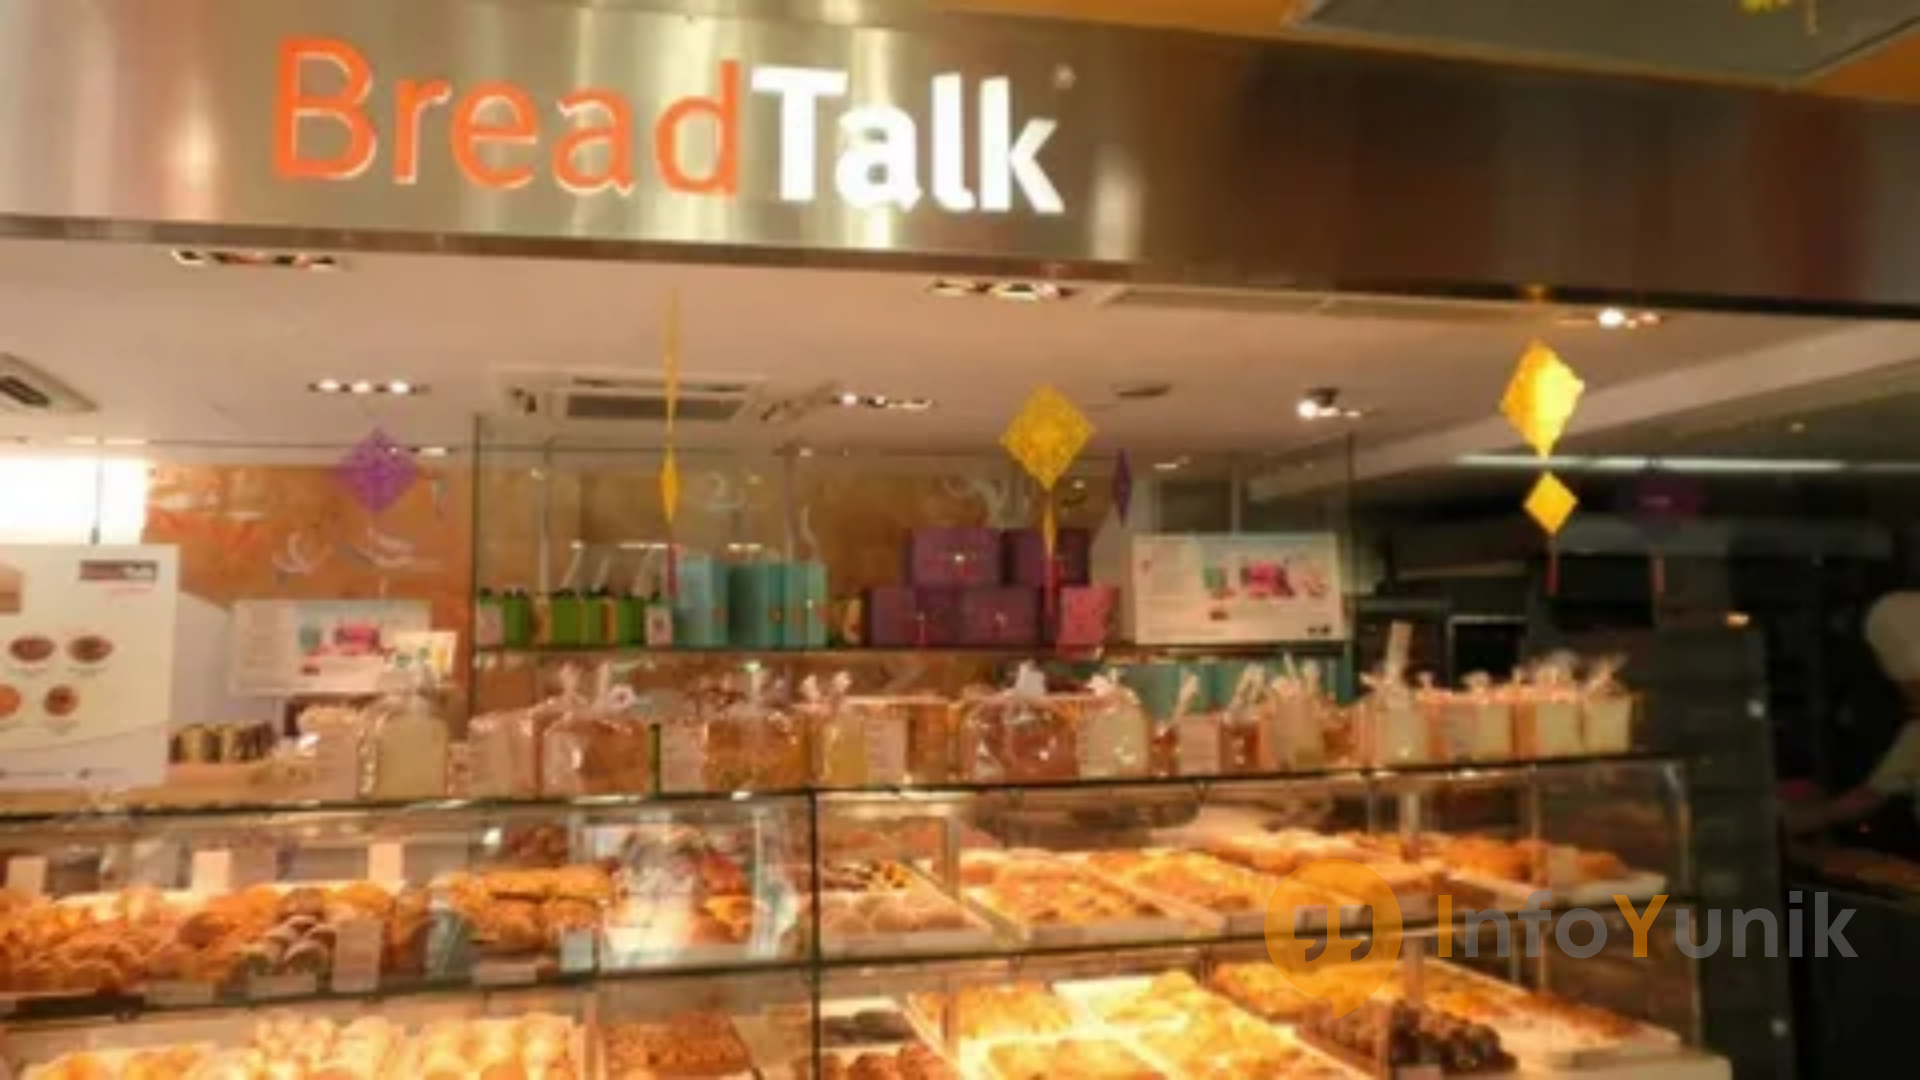 Daftar Harga Kue Breadtalk di Indonesia